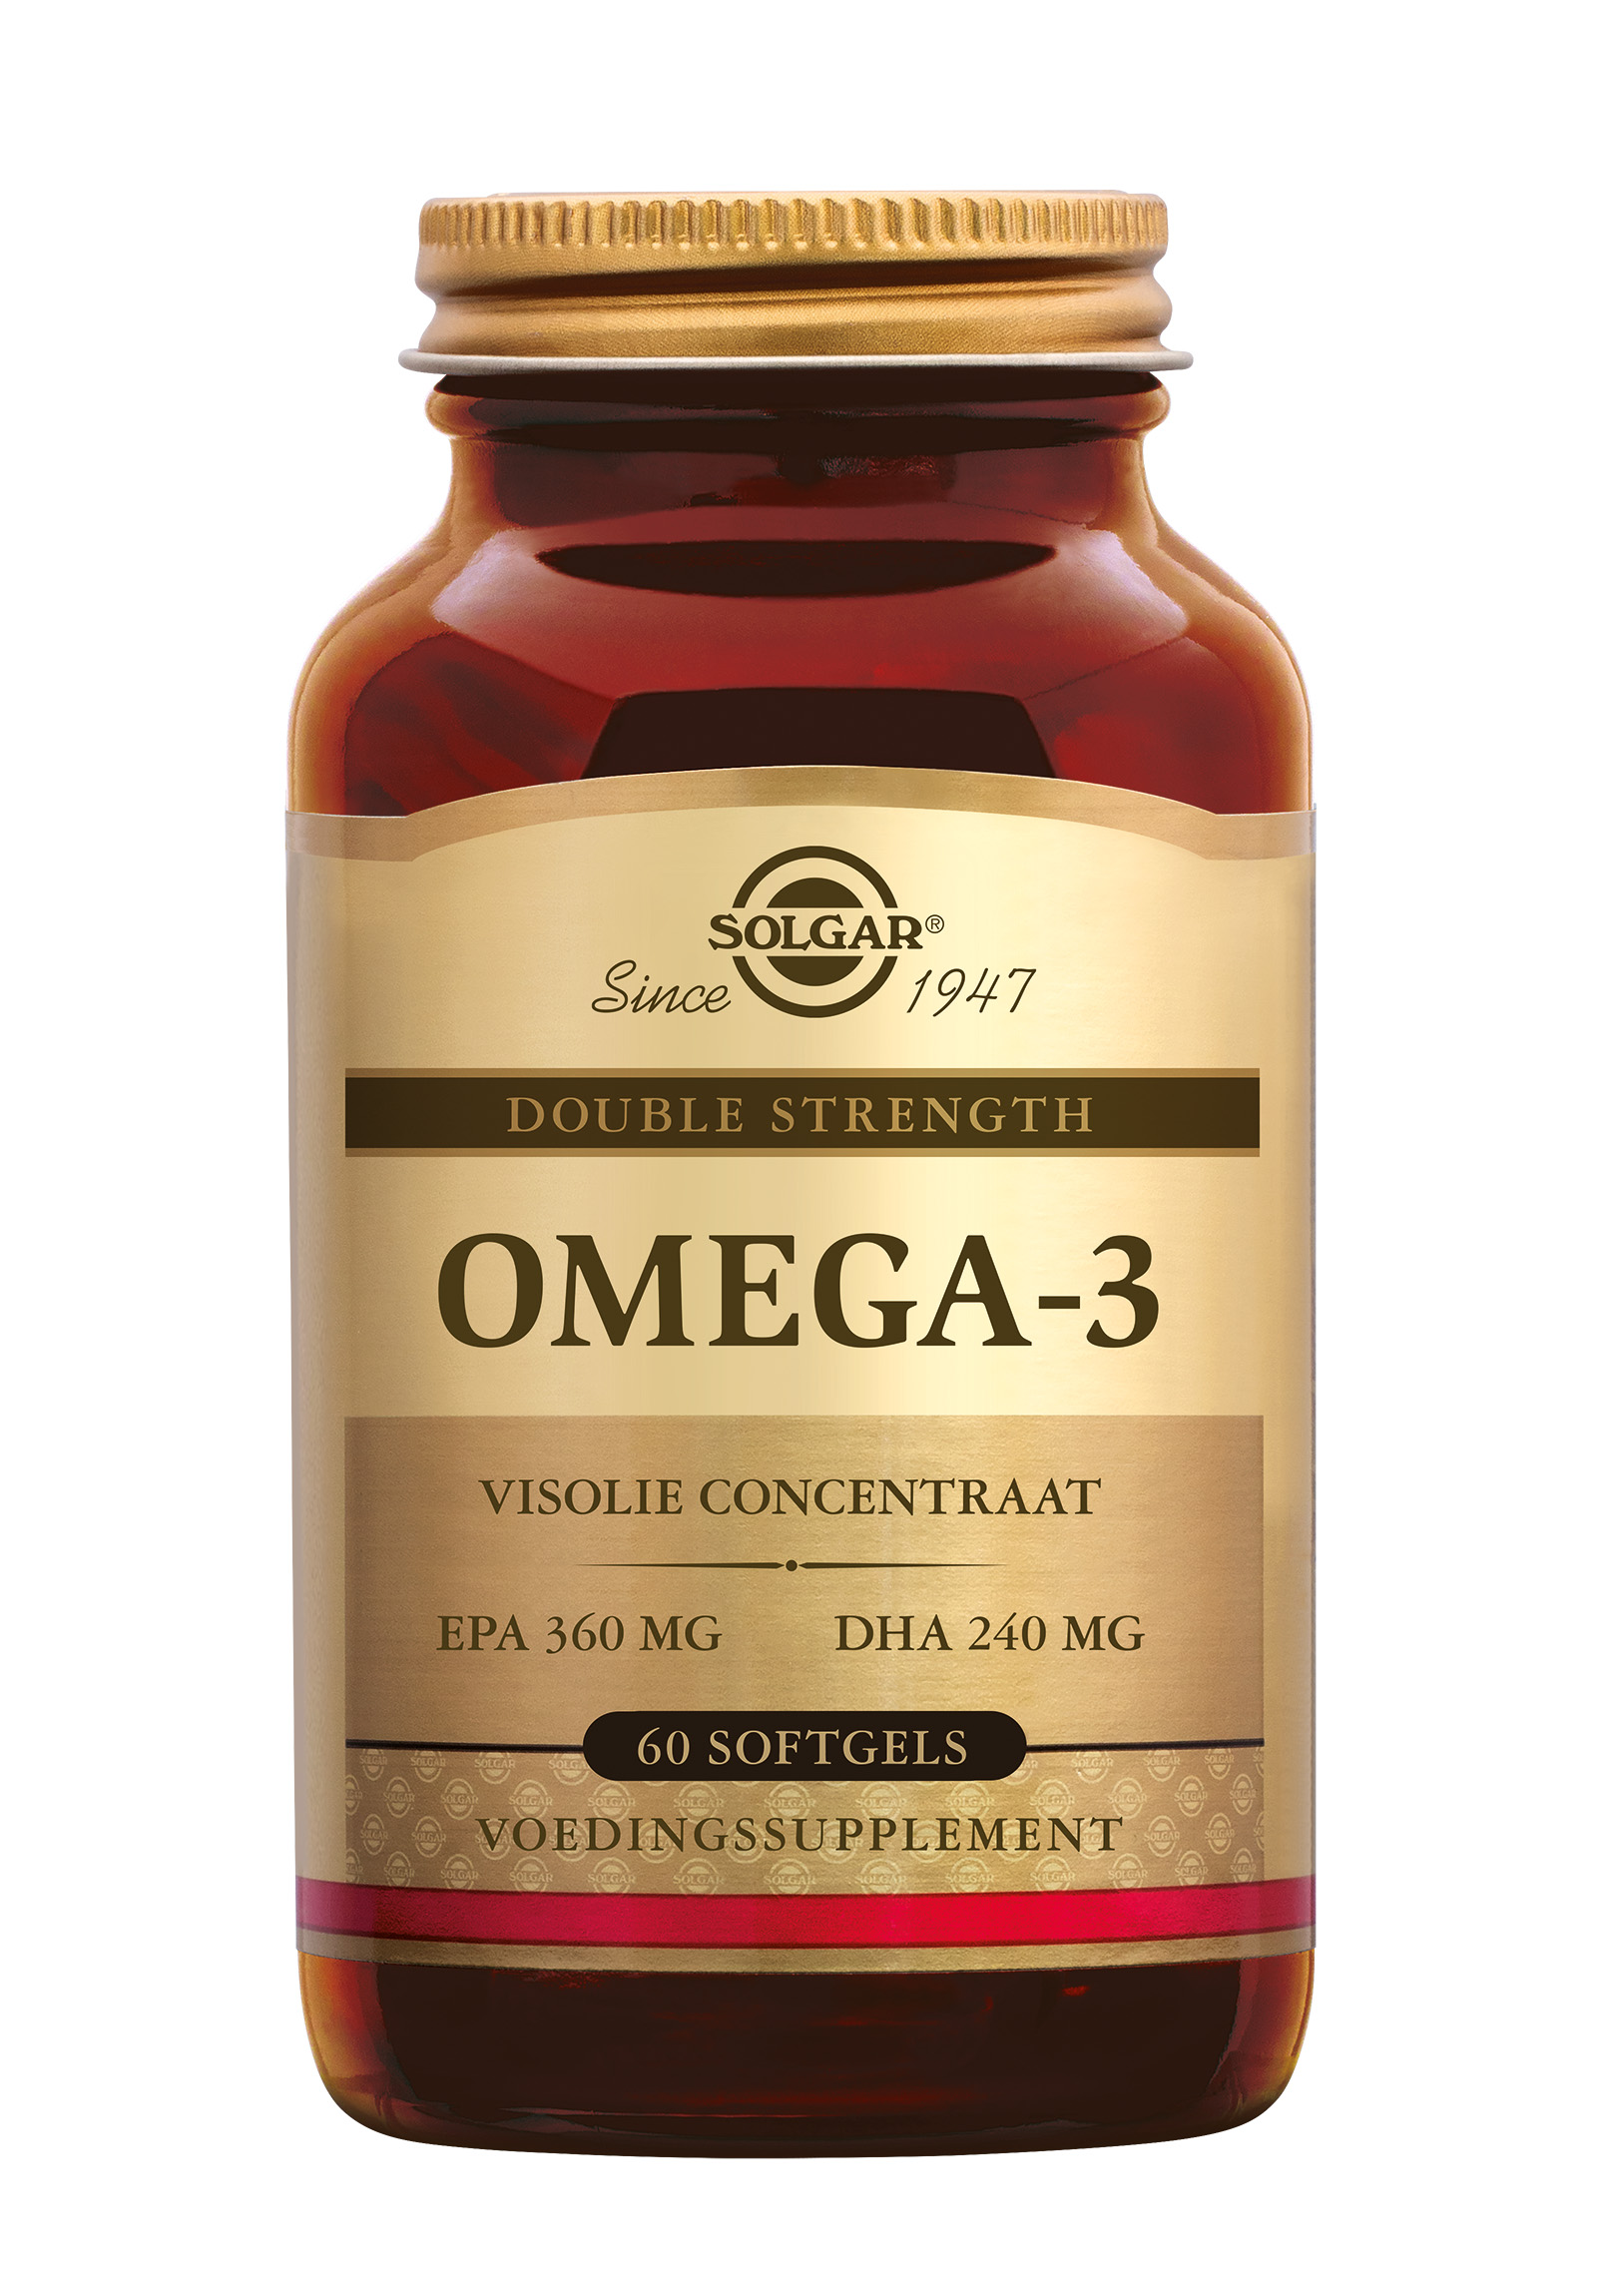 Solgar Omega-3 Double Strength (60 stuks)